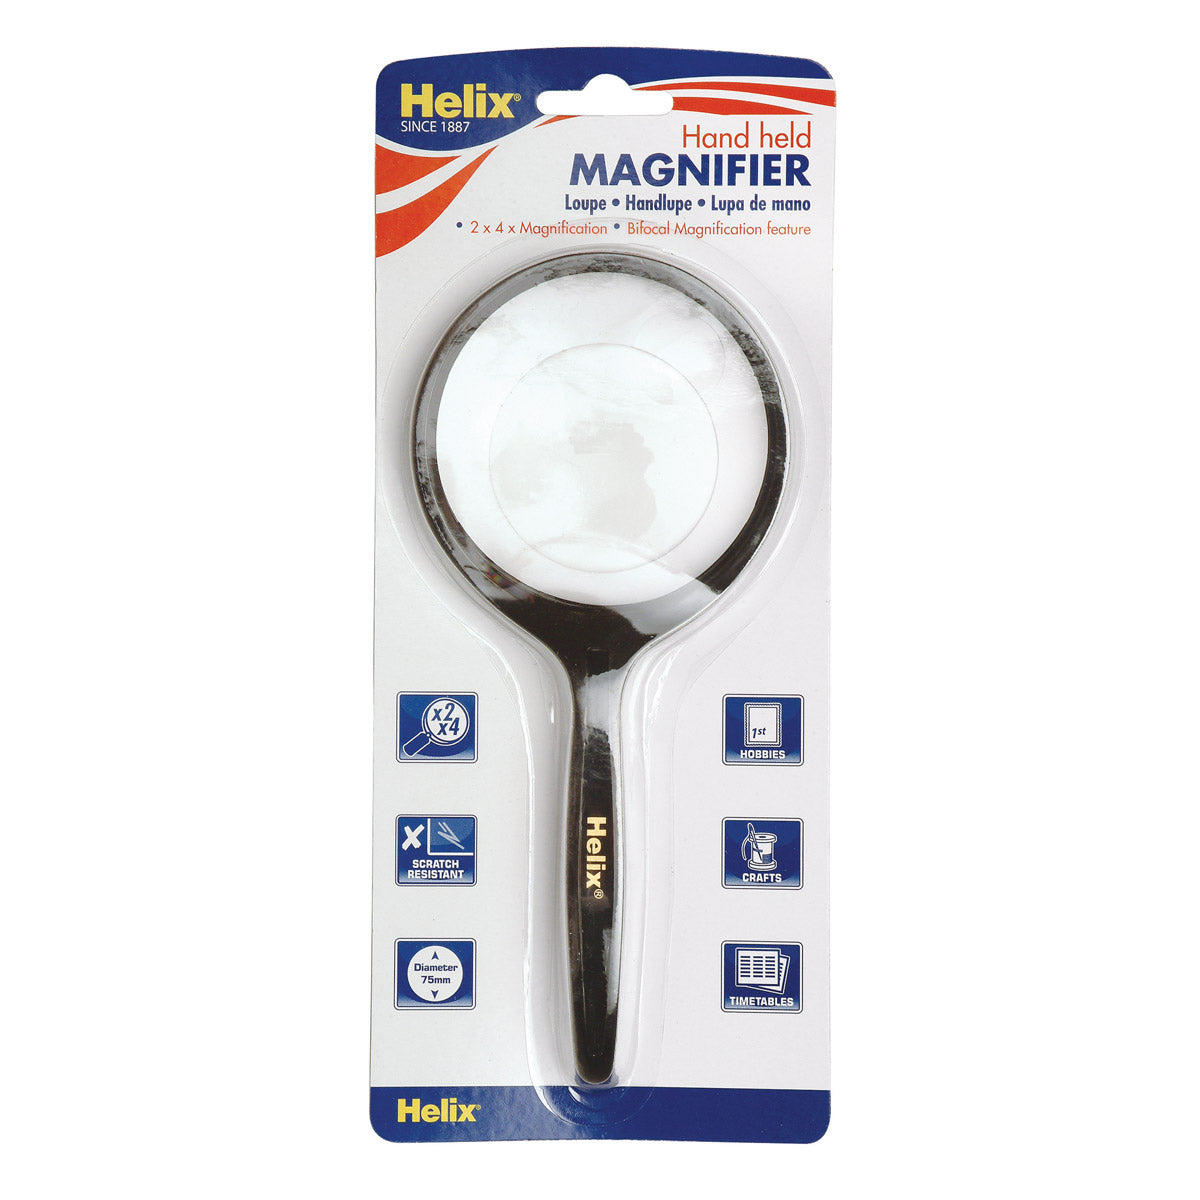 Helix 75Mm Hand Held Magnifier